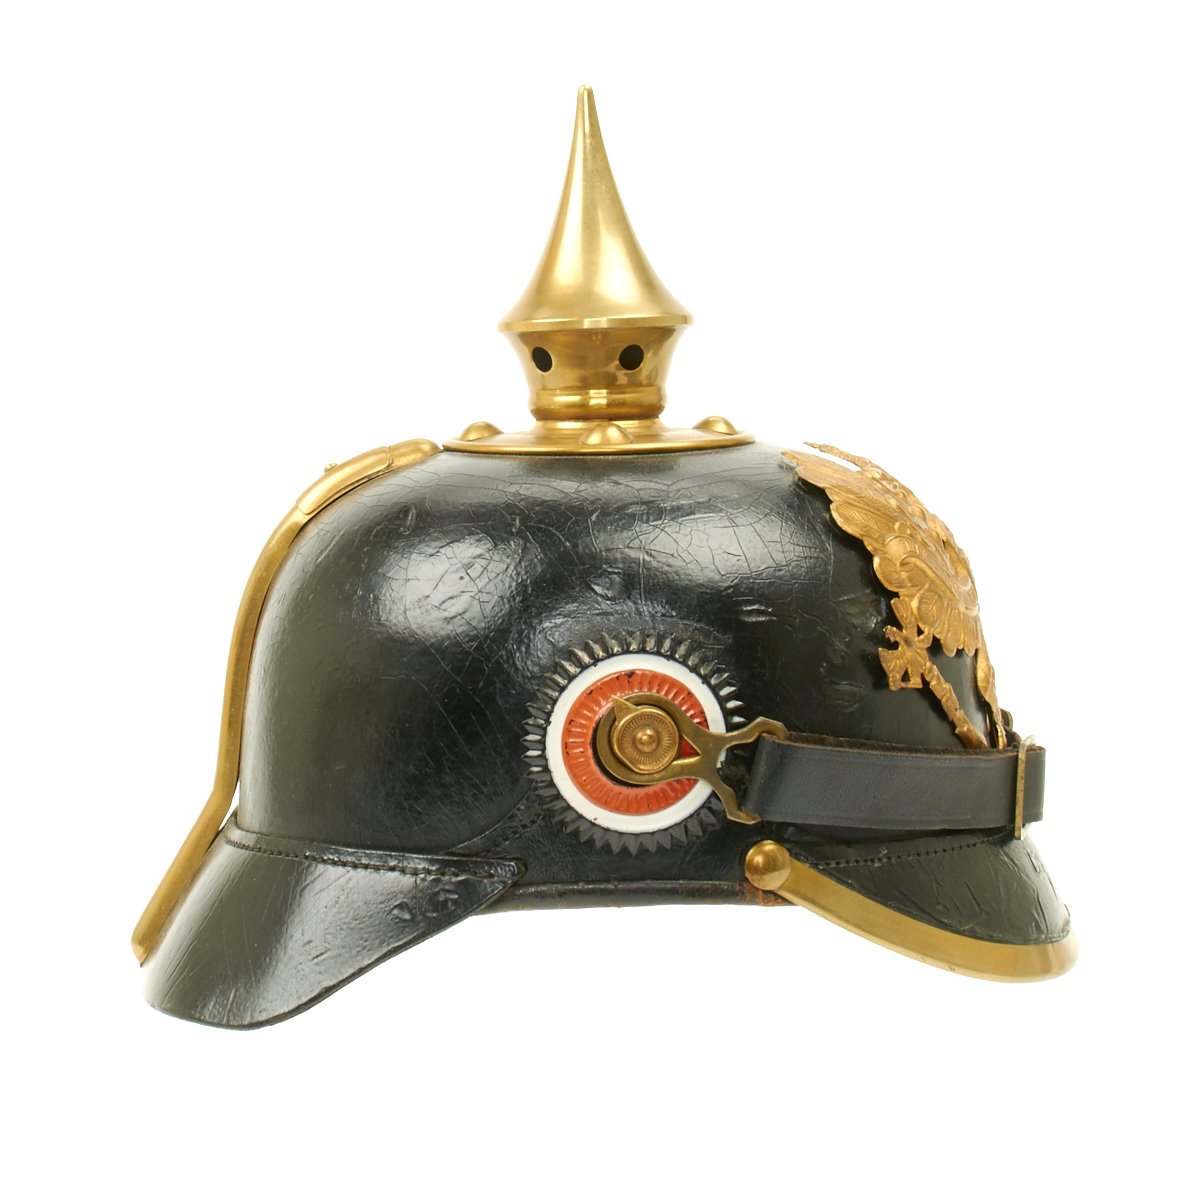 Original German WWI Prussian M1895 Pickelhaube Spiked Helmet by Julius